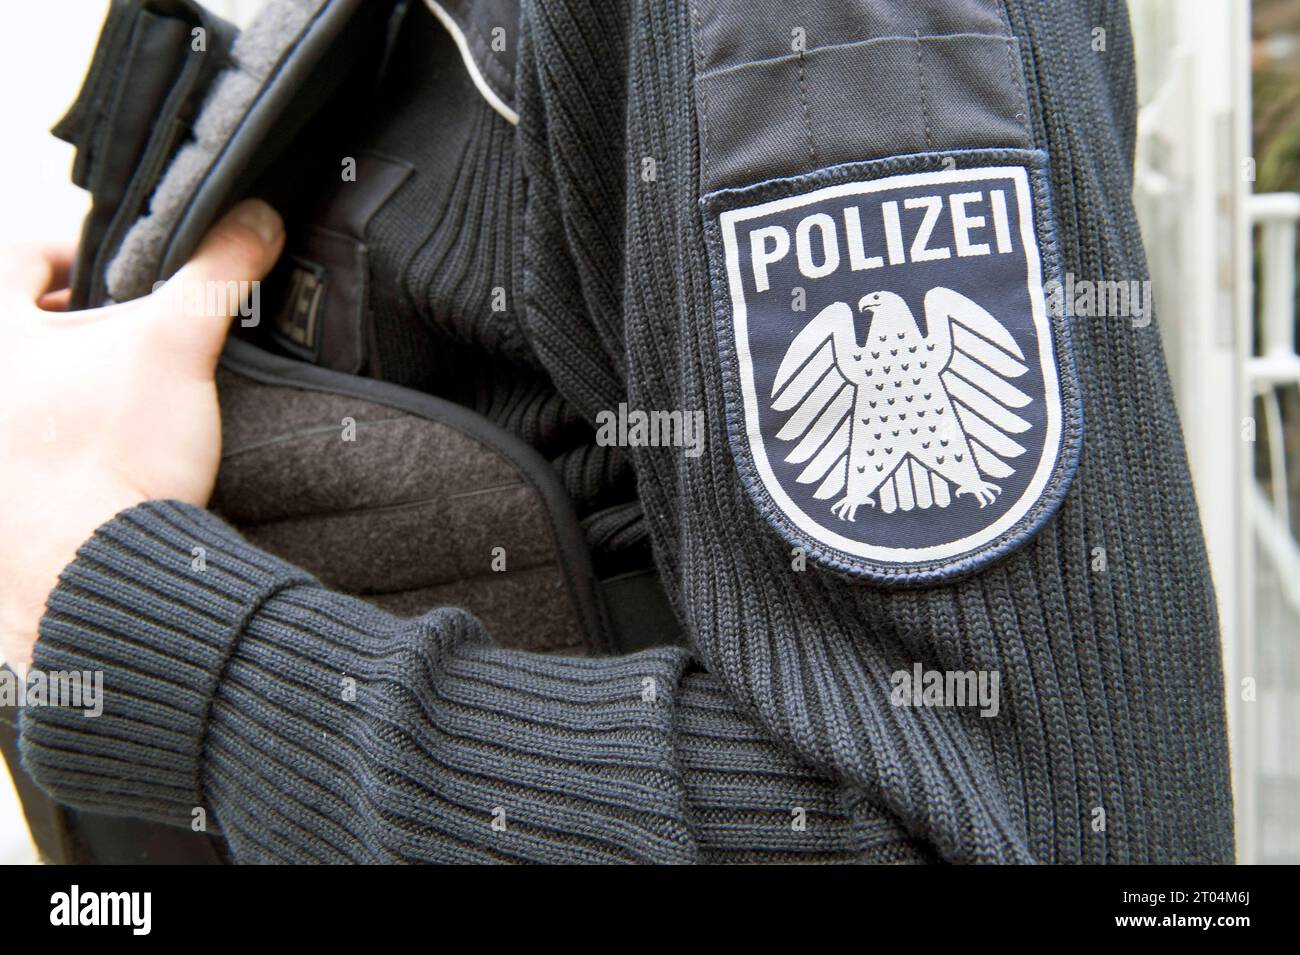 Polizei in Der Schutzausrüstung Mit Blauhelm Und Schlagstock in